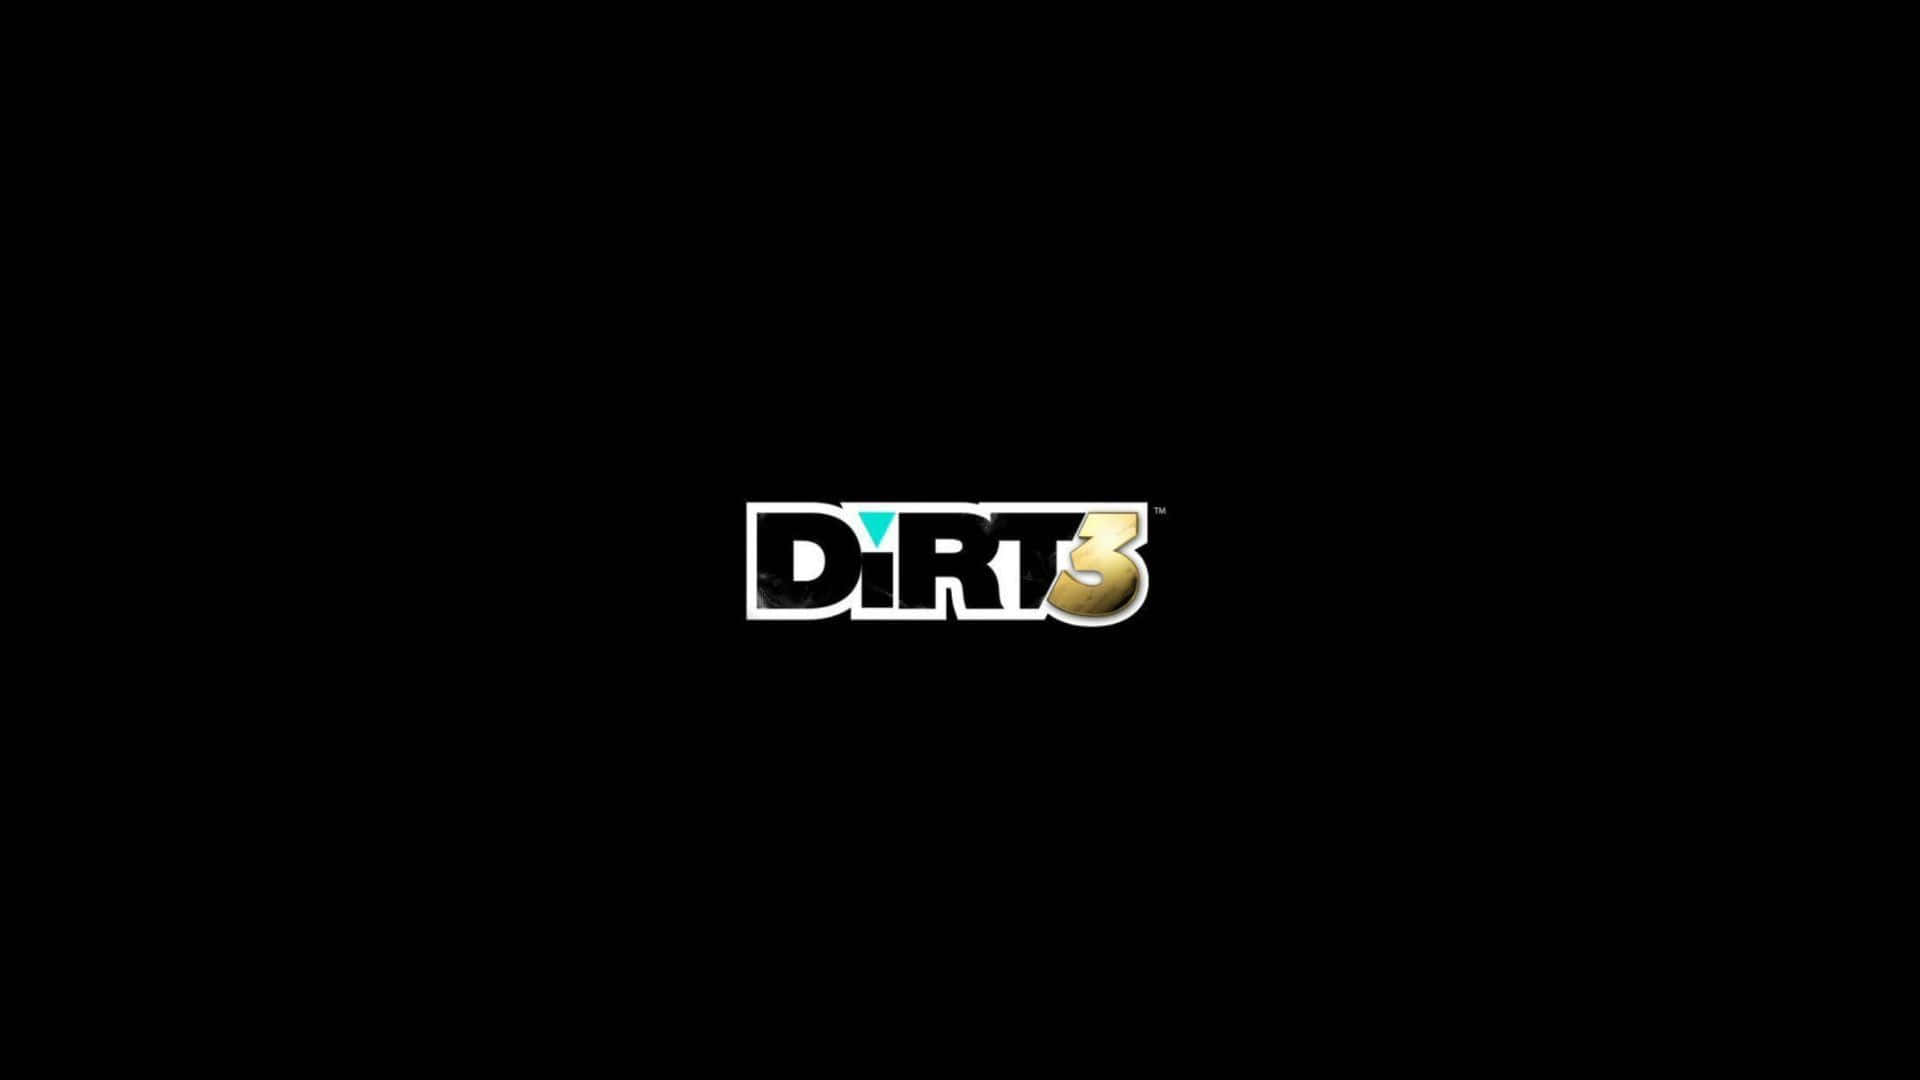 Pushagränserna I Dirt 3 I Full Hd 1080p